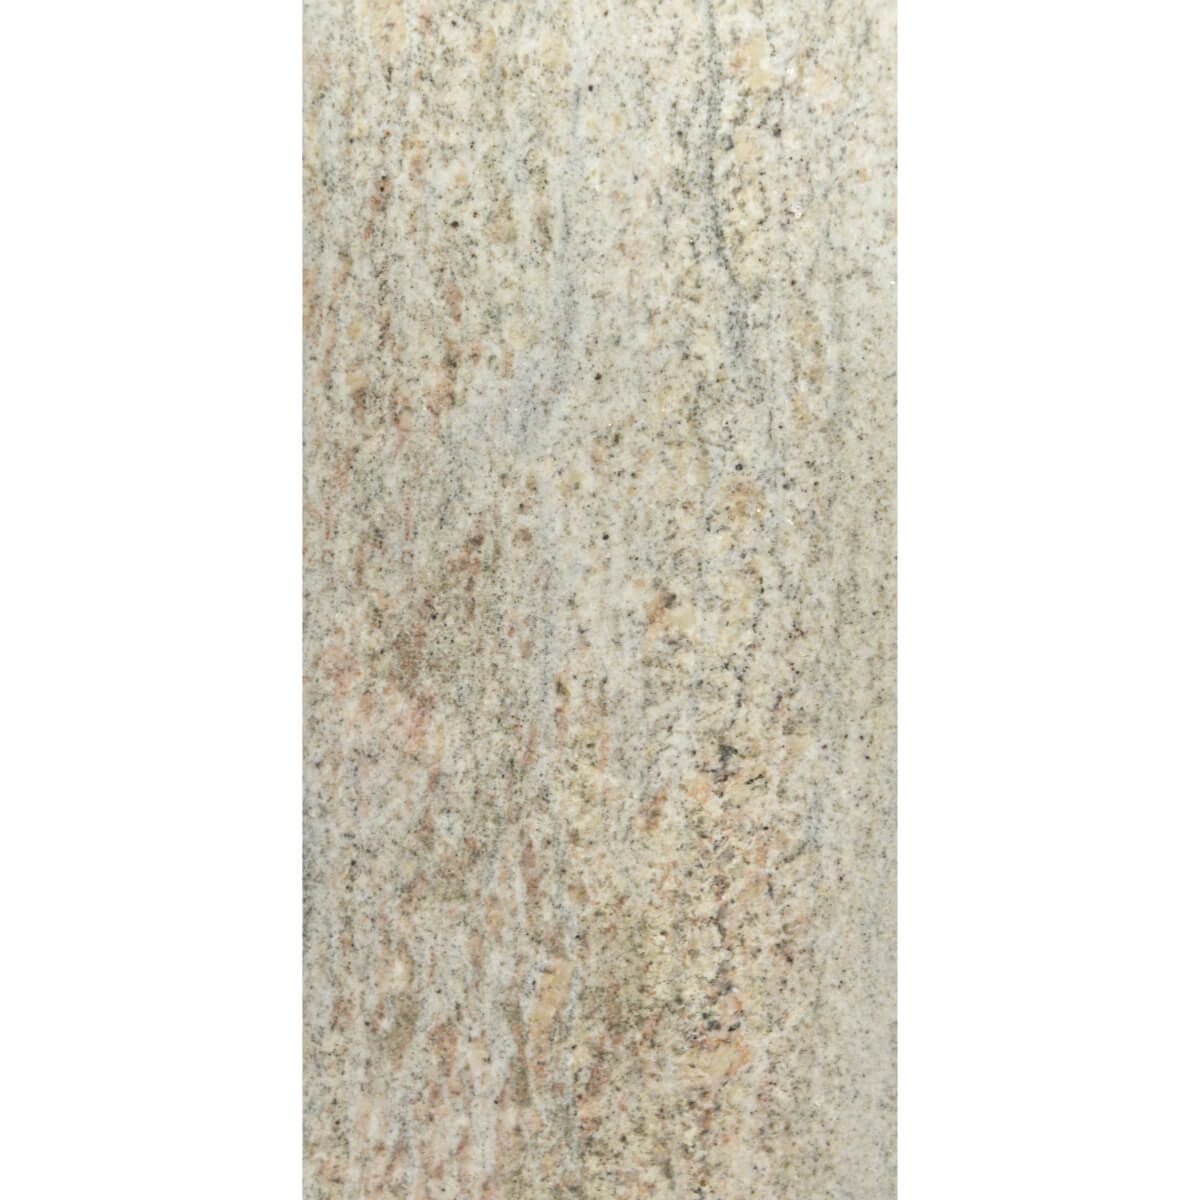 Płytki Granit Imperial White polerowany 61x30,5x1 cm